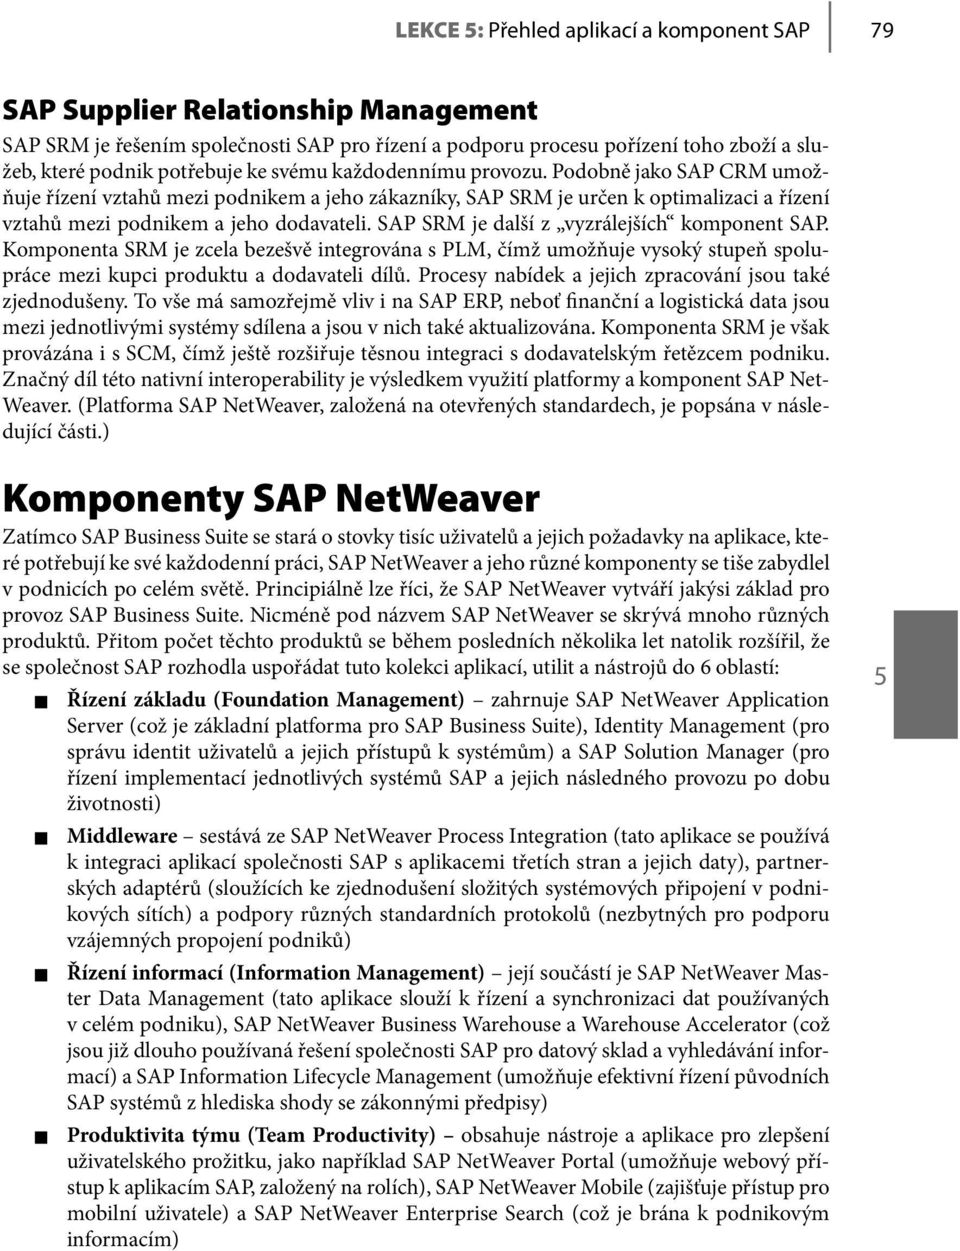 SAP SRM je další z vyzrálejších komponent SAP. Komponenta SRM je zcela bezešvě integrována s PLM, čímž umožňuje vysoký stupeň spolupráce mezi kupci produktu a dodavateli dílů.